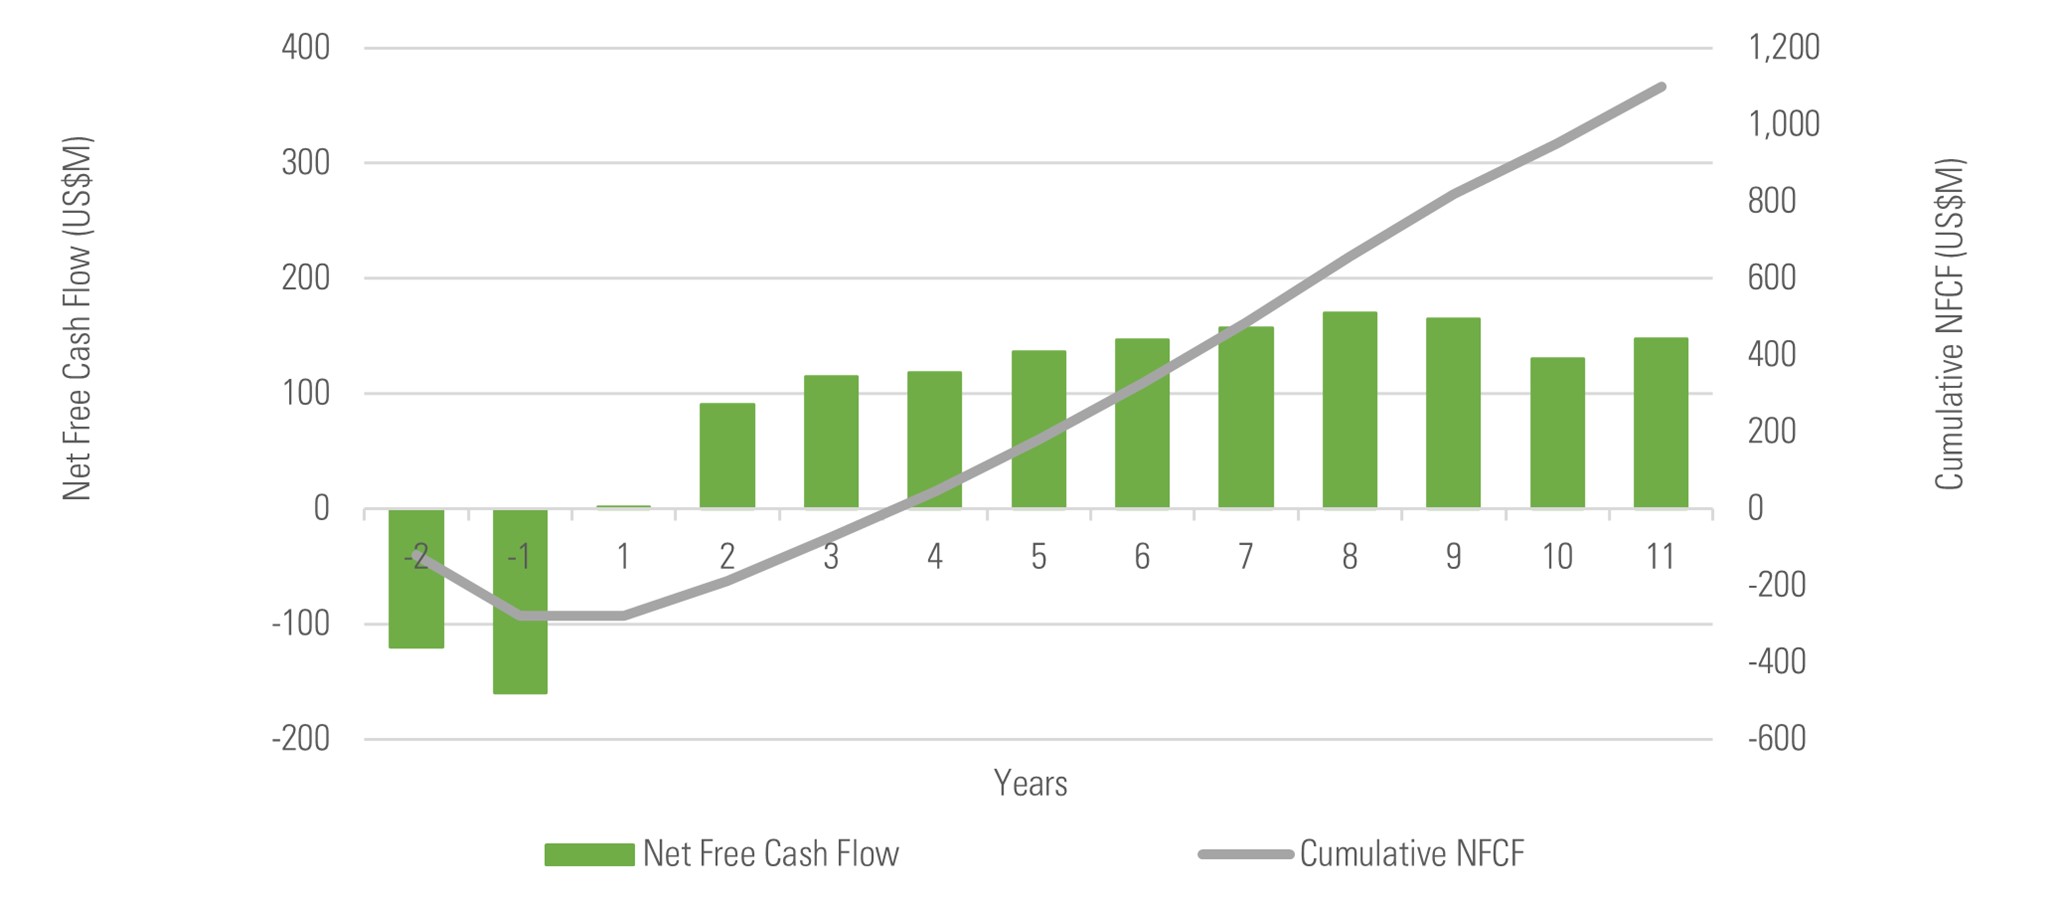 Figure 1: LOP key economic forecast and net free cash flow (NFCF)